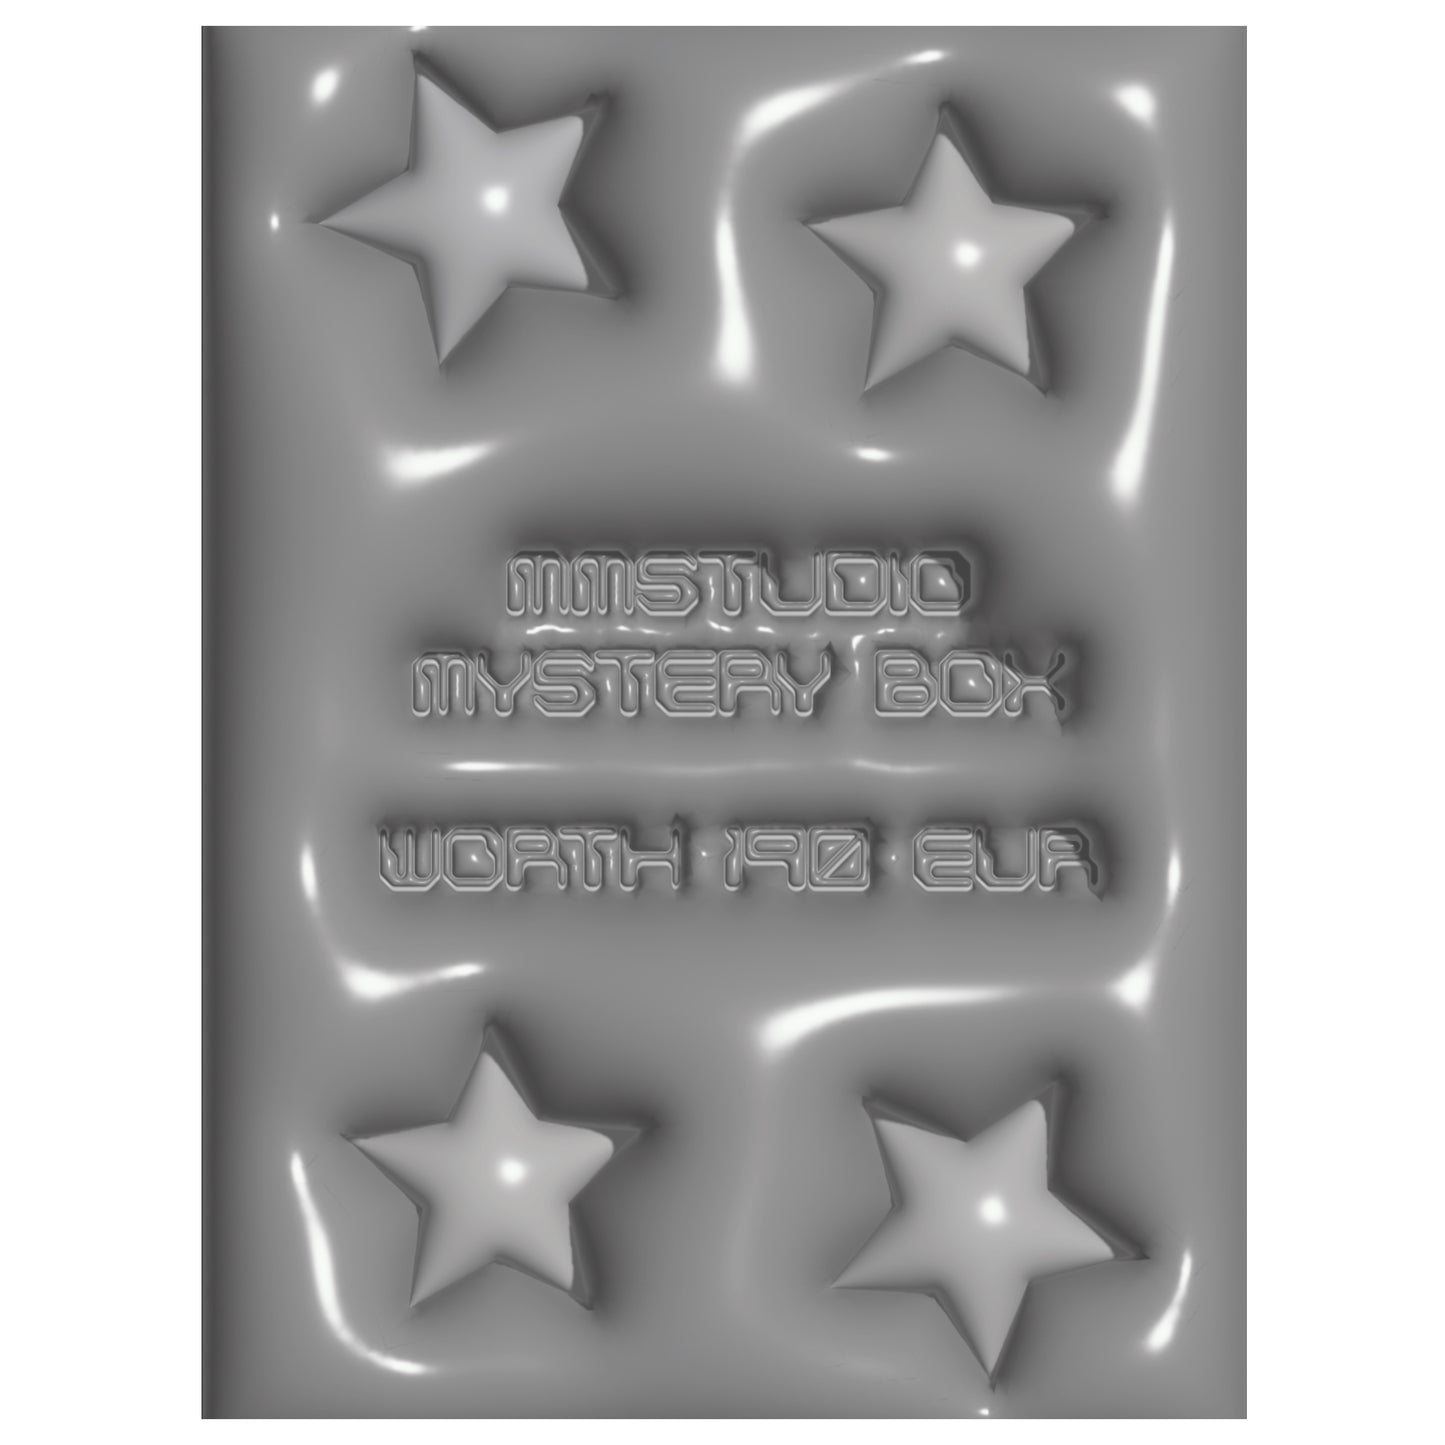 MMSTUDIO MYSTERY BOX 2 WORTH €190